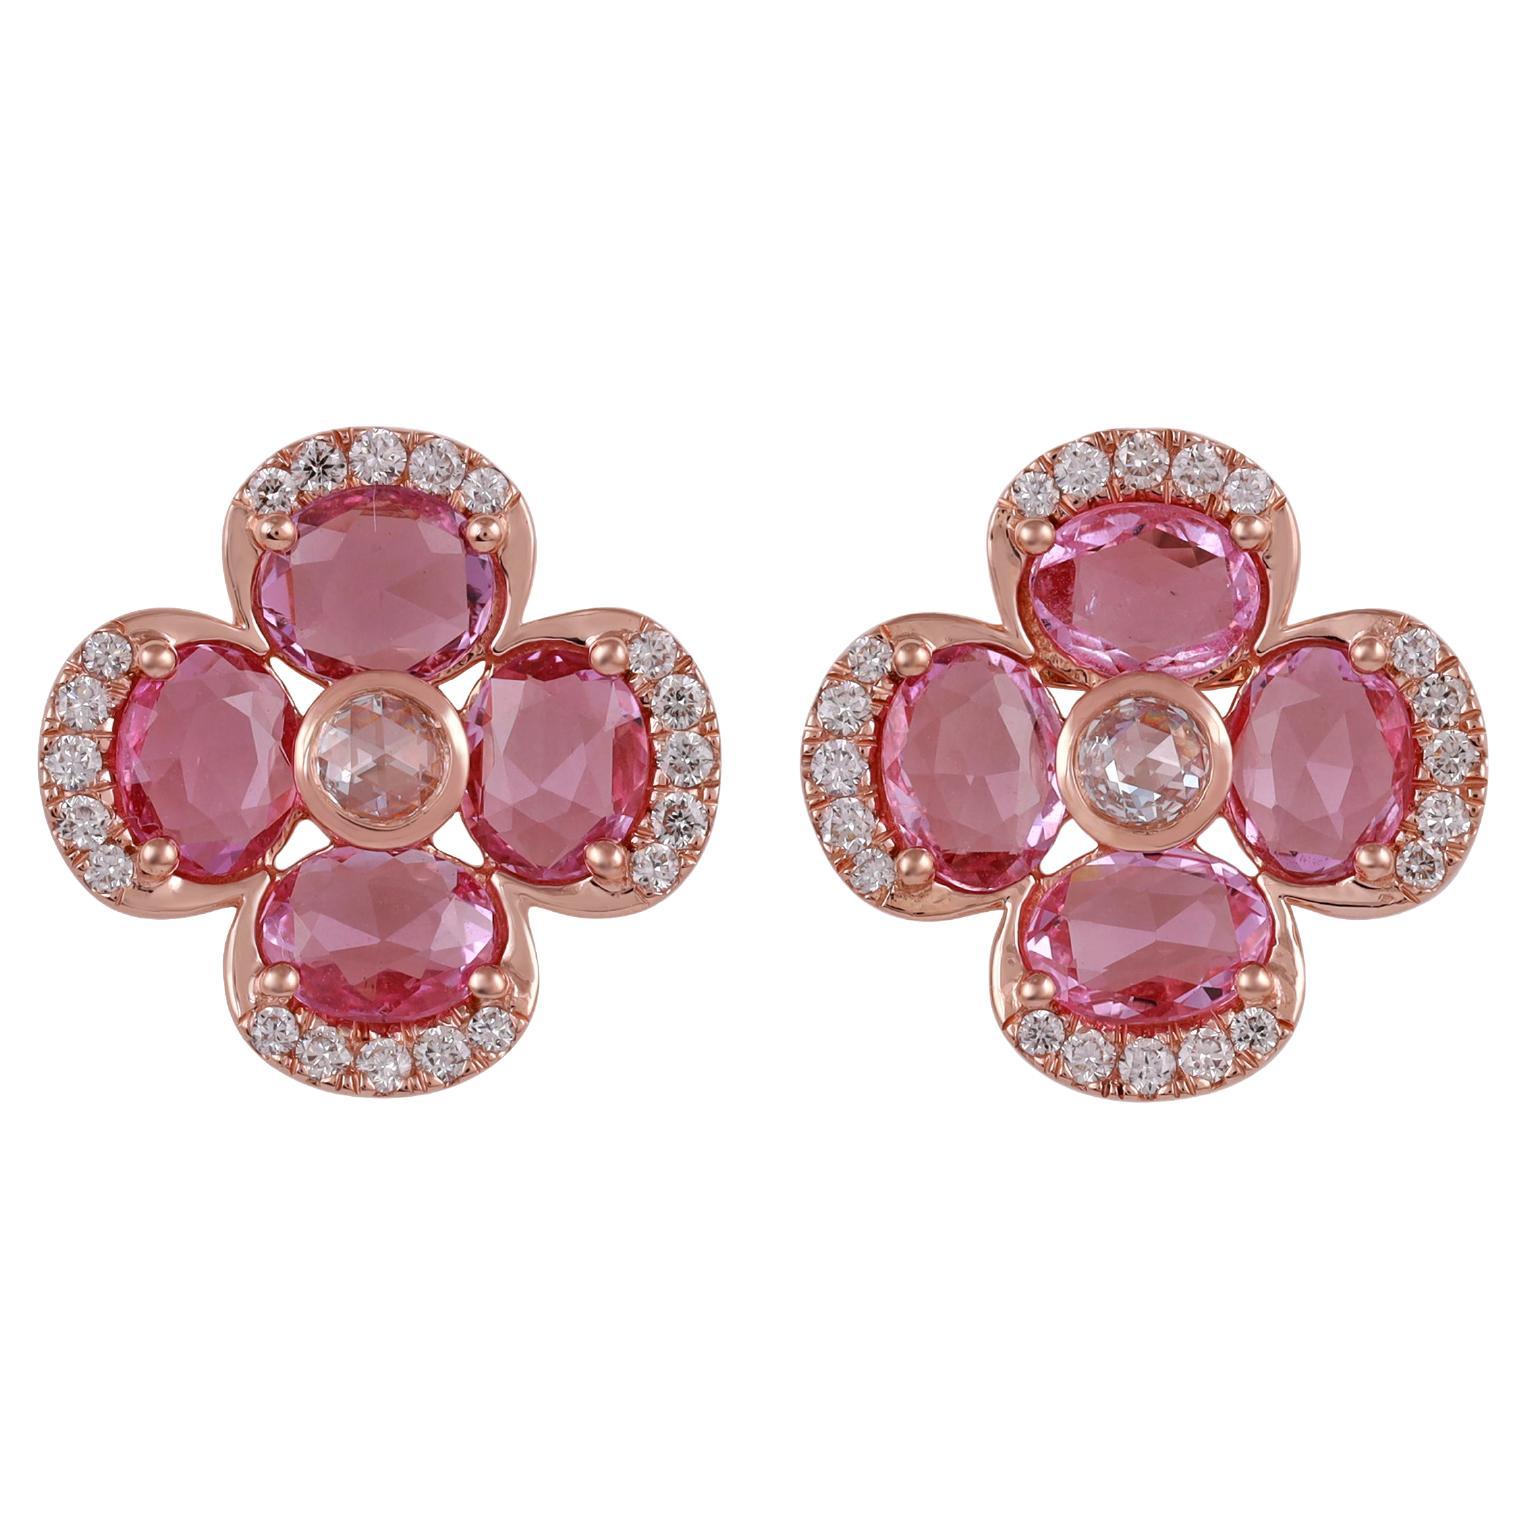 Ohrring aus 18 Karat Roségold mit rosa Saphiren und Diamanten